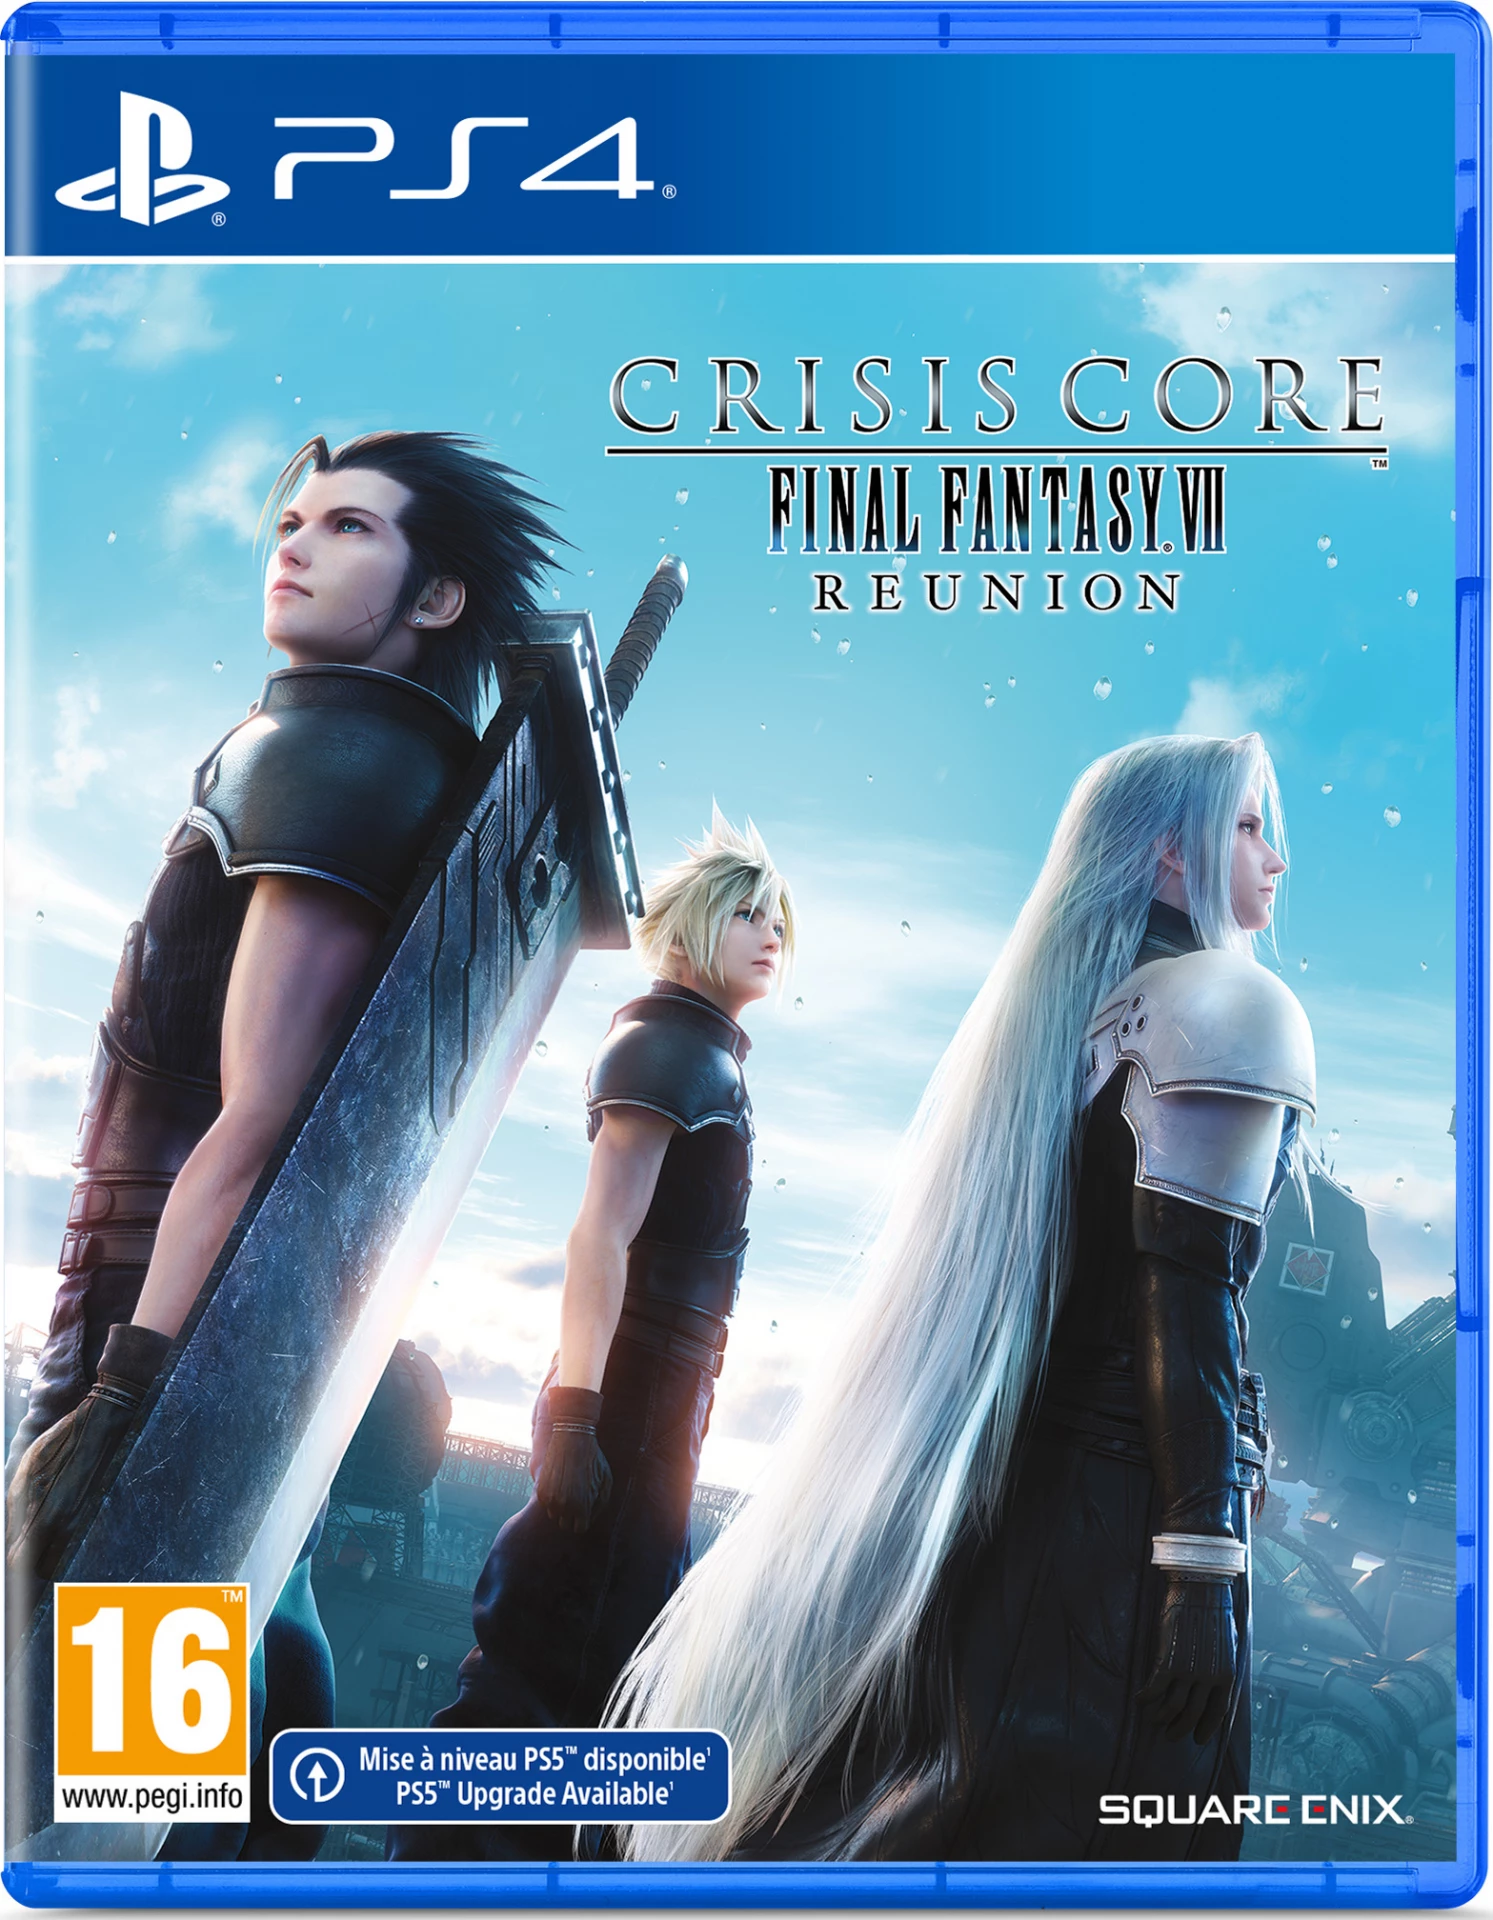 Crisis Core Final Fantasy 7 Reunion voor de PlayStation 4 preorder plaatsen op nedgame.nl